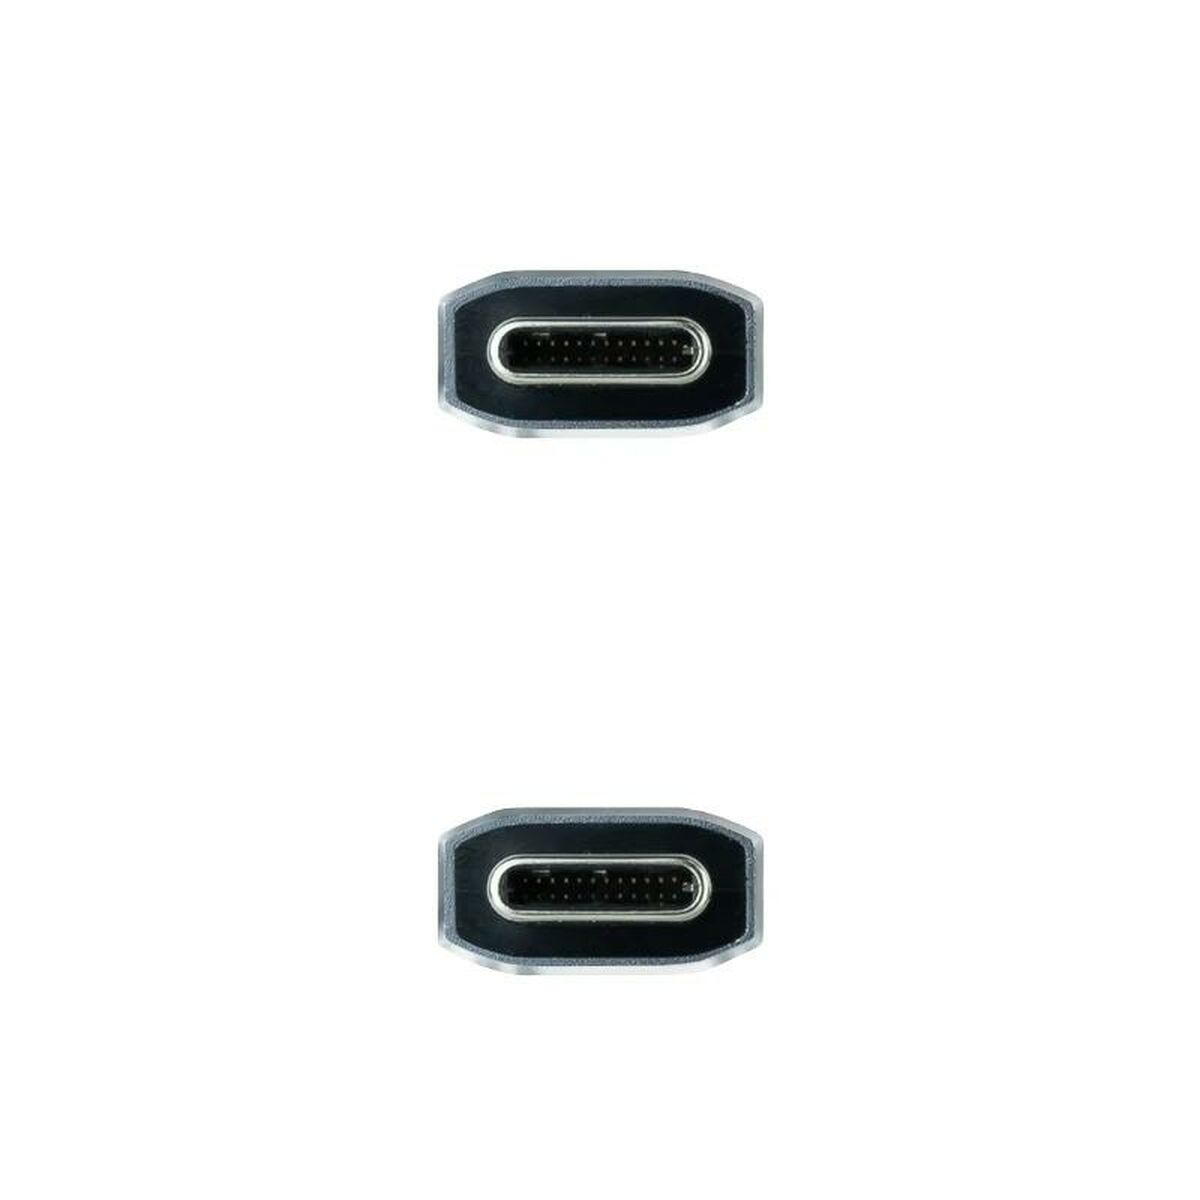 Kabel NANOCABLE 10.01.4100-COMB, USB C